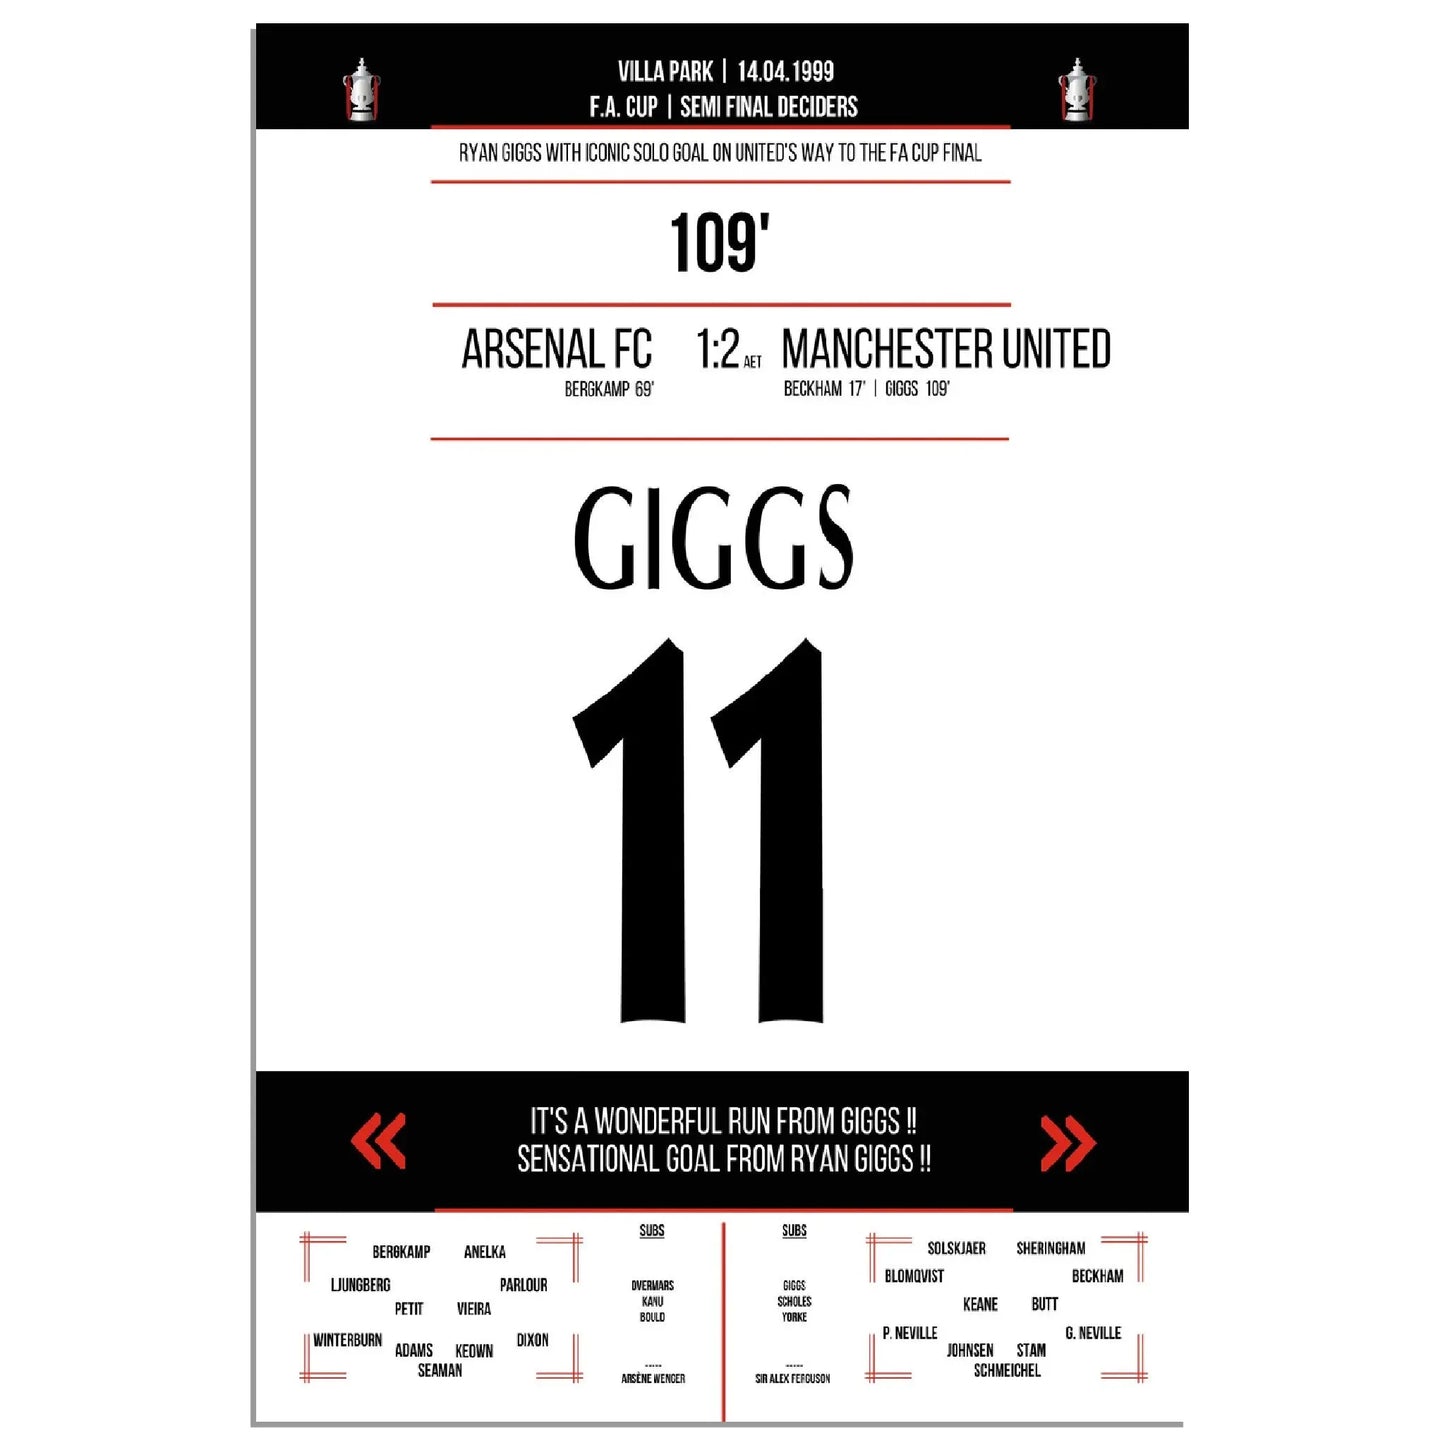 Ryan Giggs legendäres Tor im FA Cup Halbfinal-Triumph gegen Arsenal in 1999 